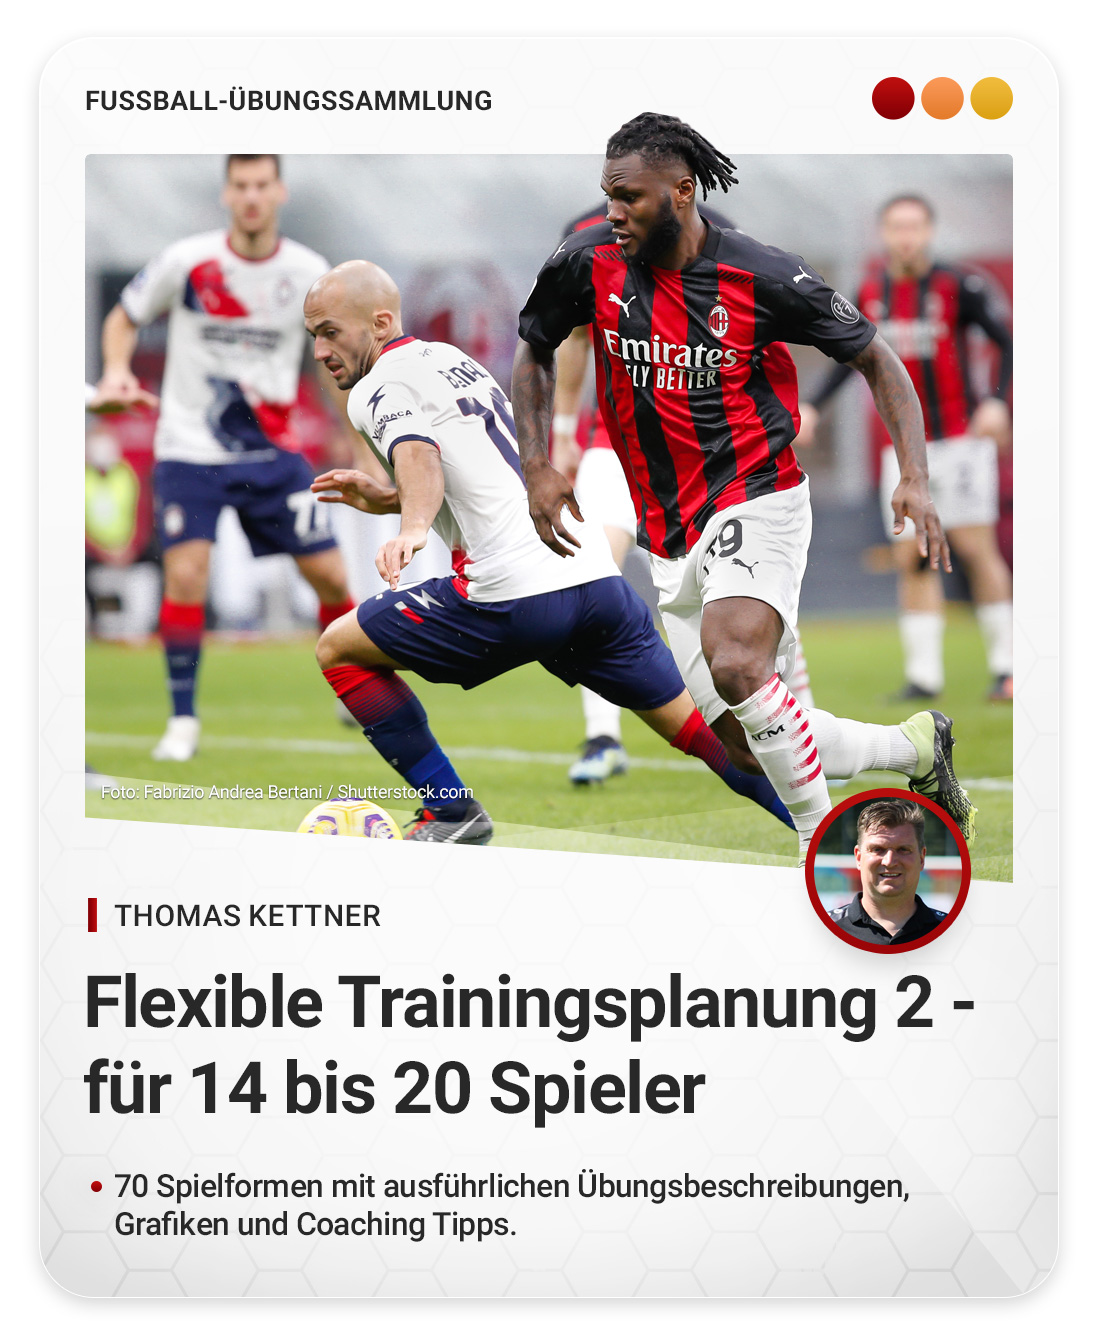 Flexible Trainingsplanung 2 - für 14 bis 20 Spieler (Übungssammlung)